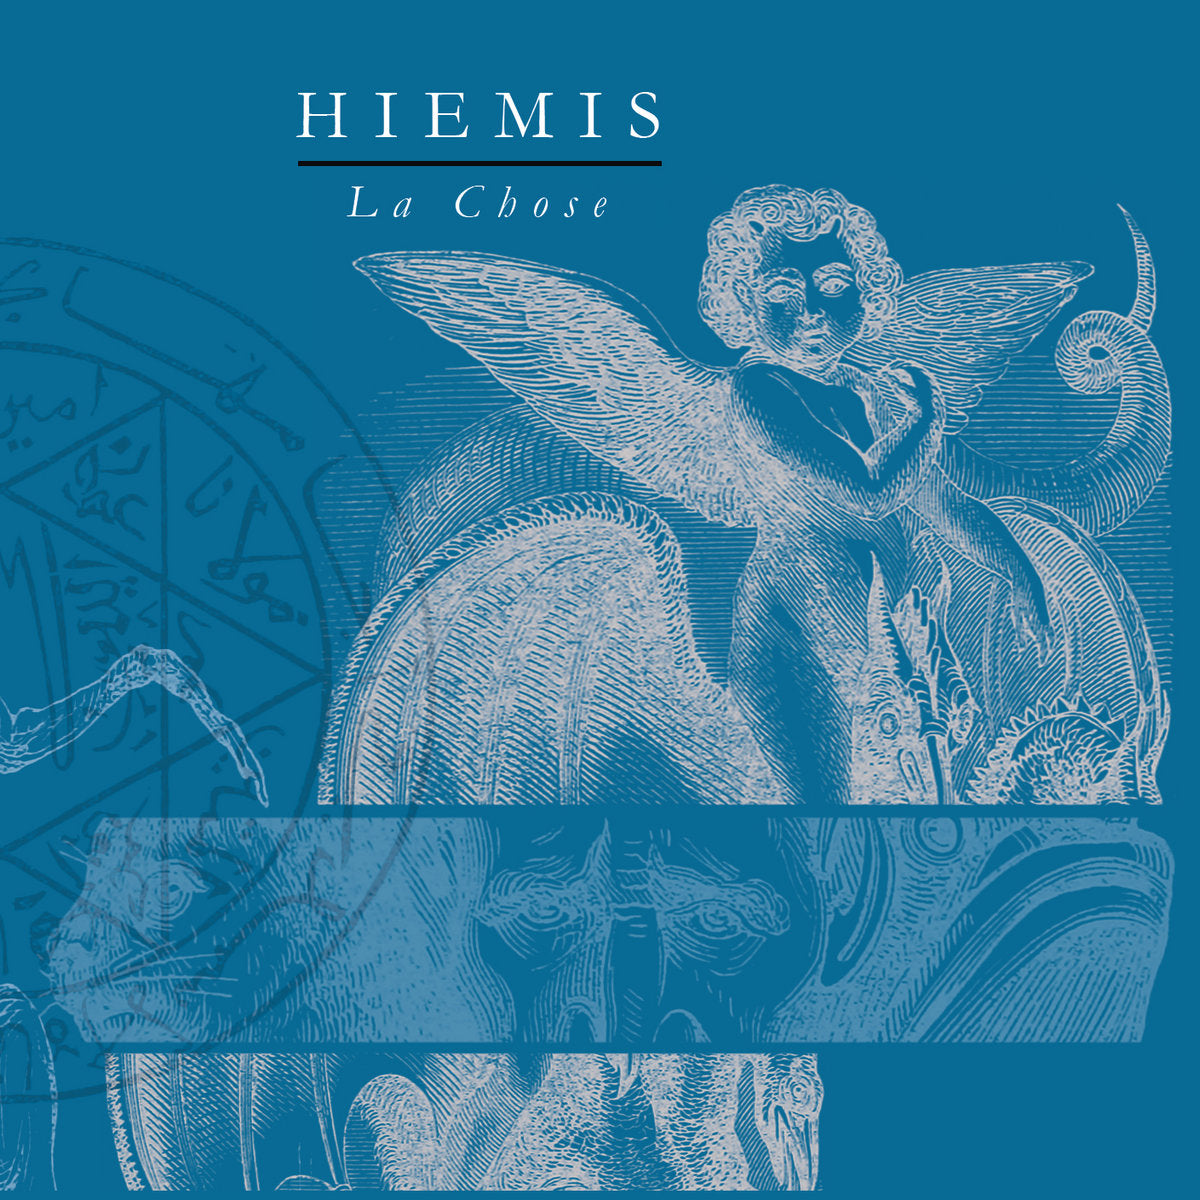 Hiemis - La Chose